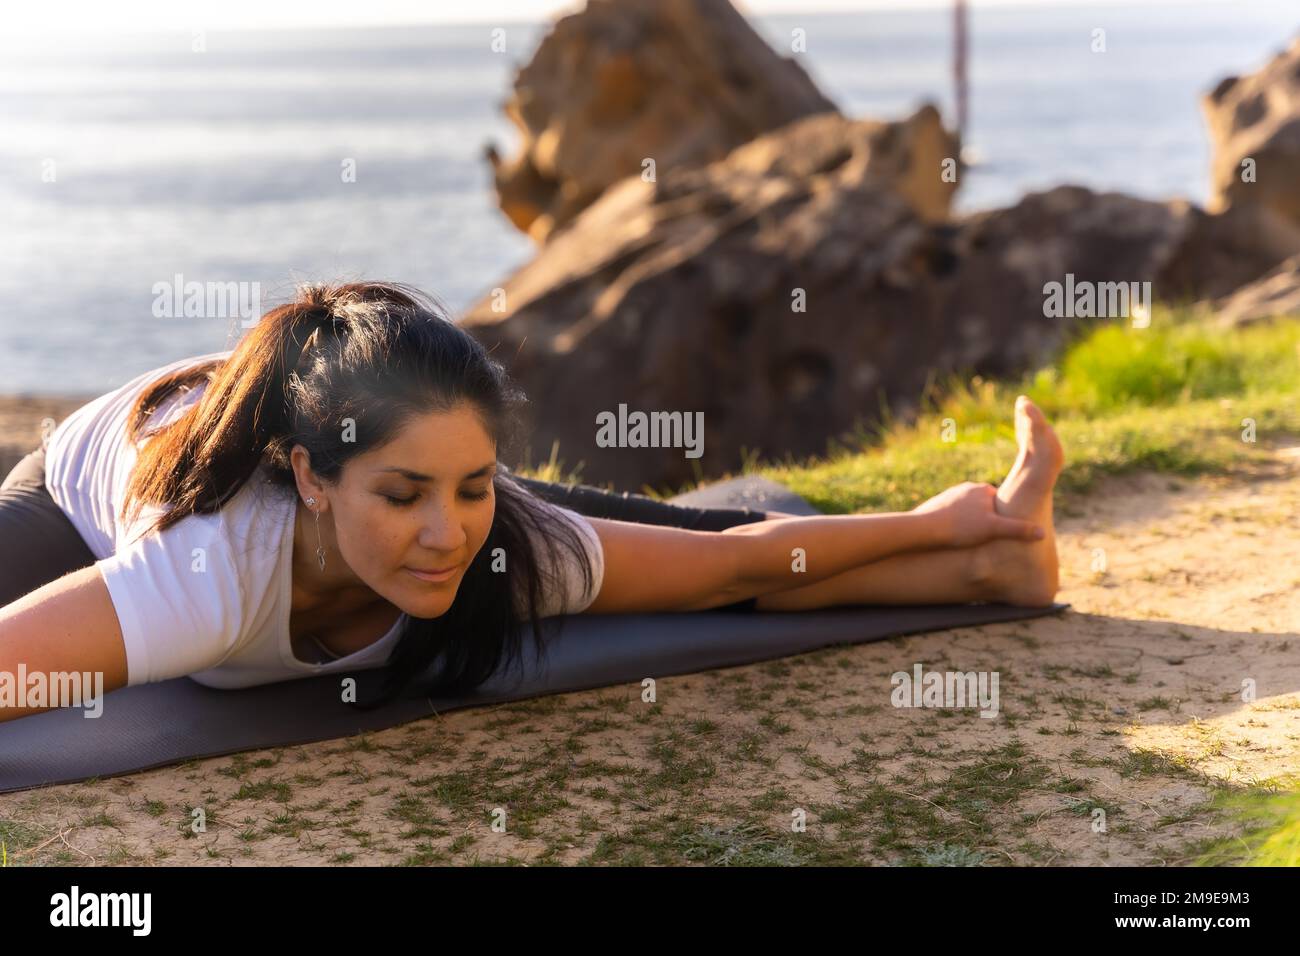 Une femme faisant des exercices de yoga dans la nature au bord de la mer, faisant des étirements Banque D'Images